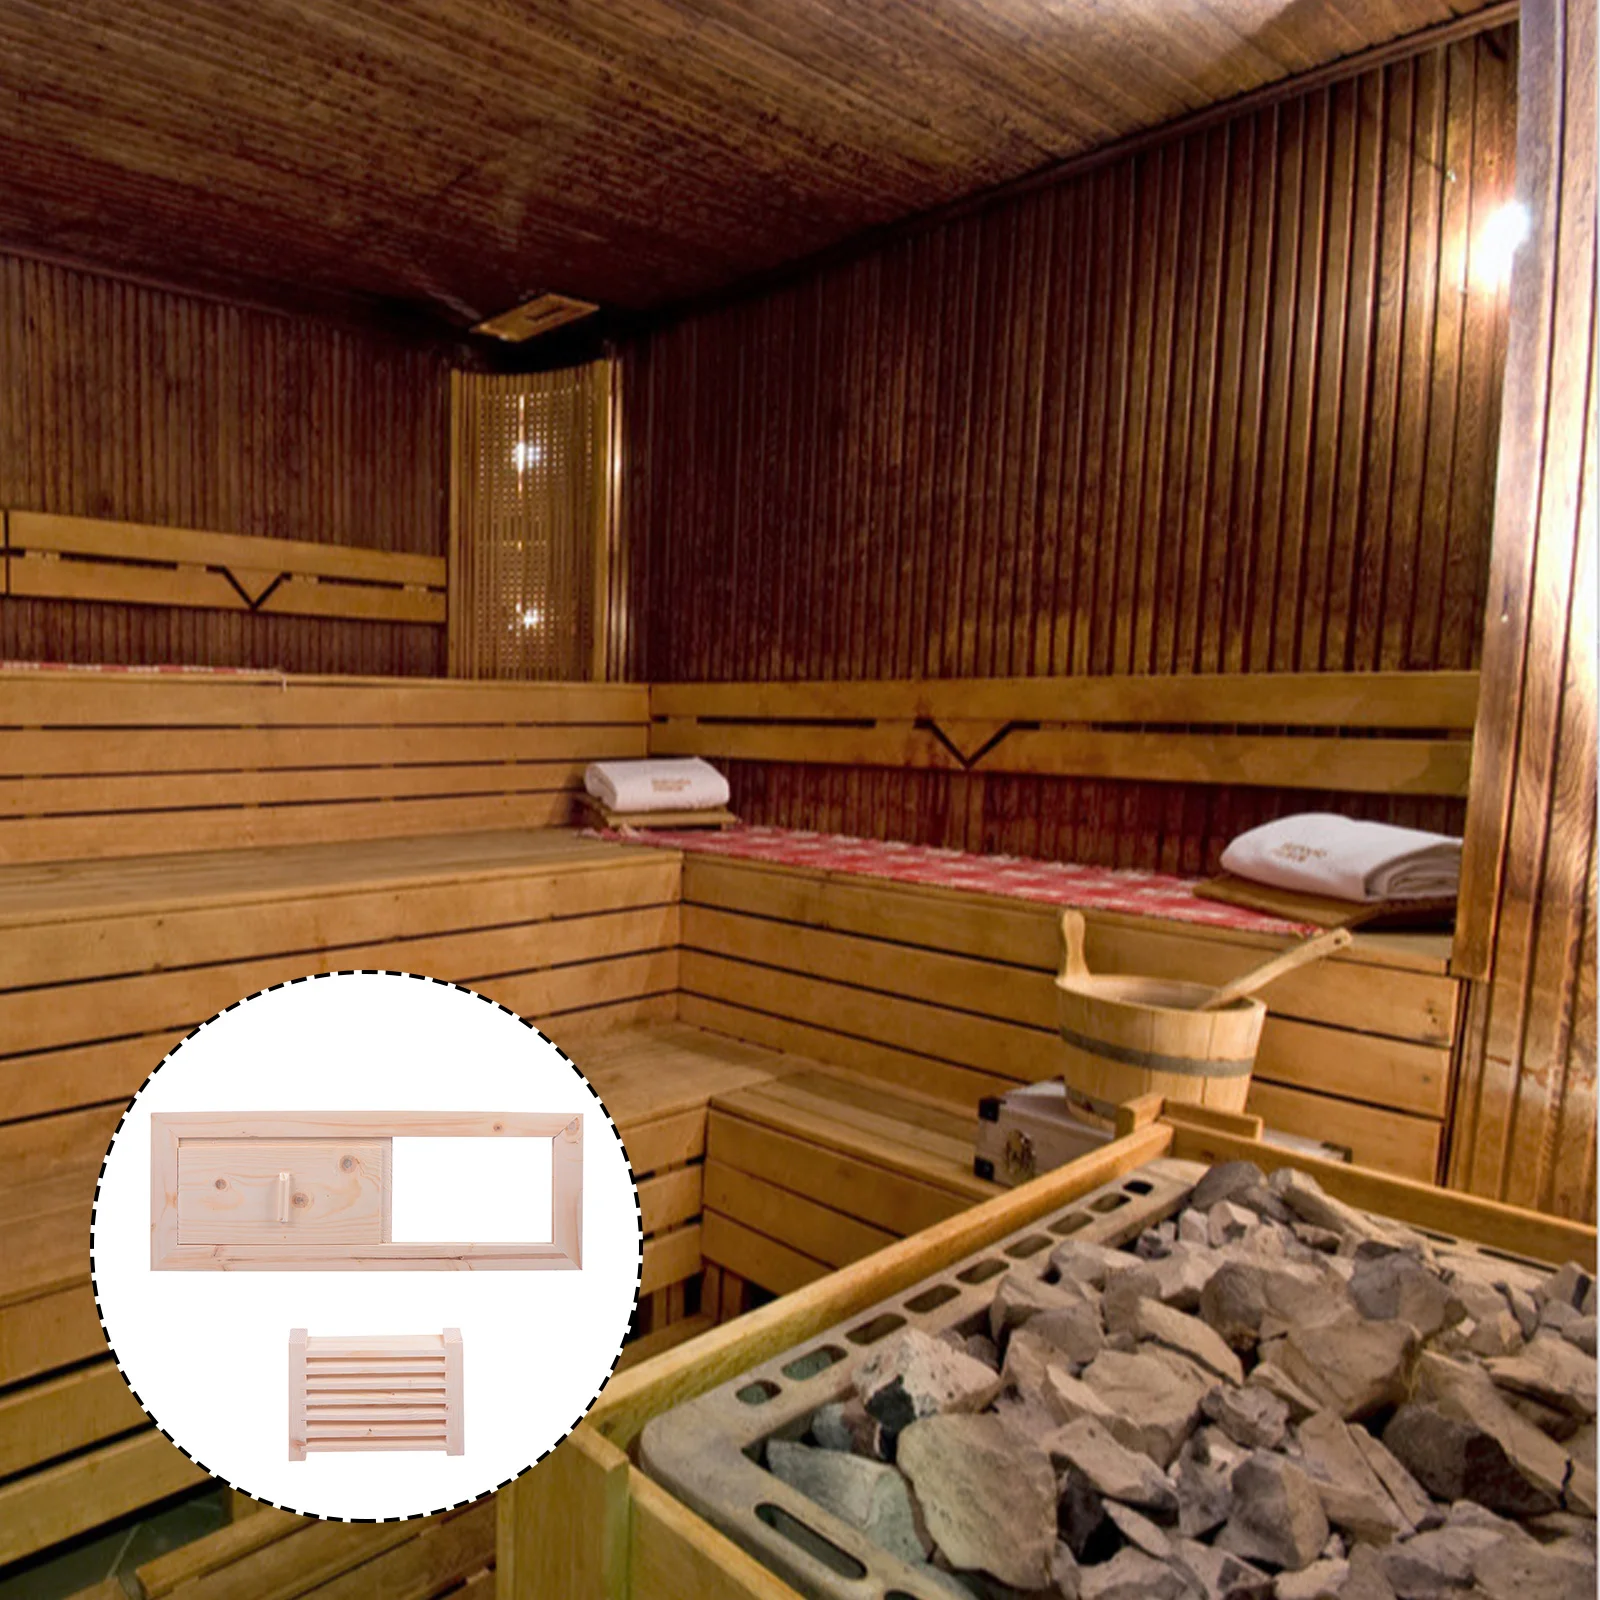 

Sauna Room Air Vent Blinds Grille Ventilation Panel Steam Room Ventilation Blind Ventilator Set Household Bathroom Ventilator